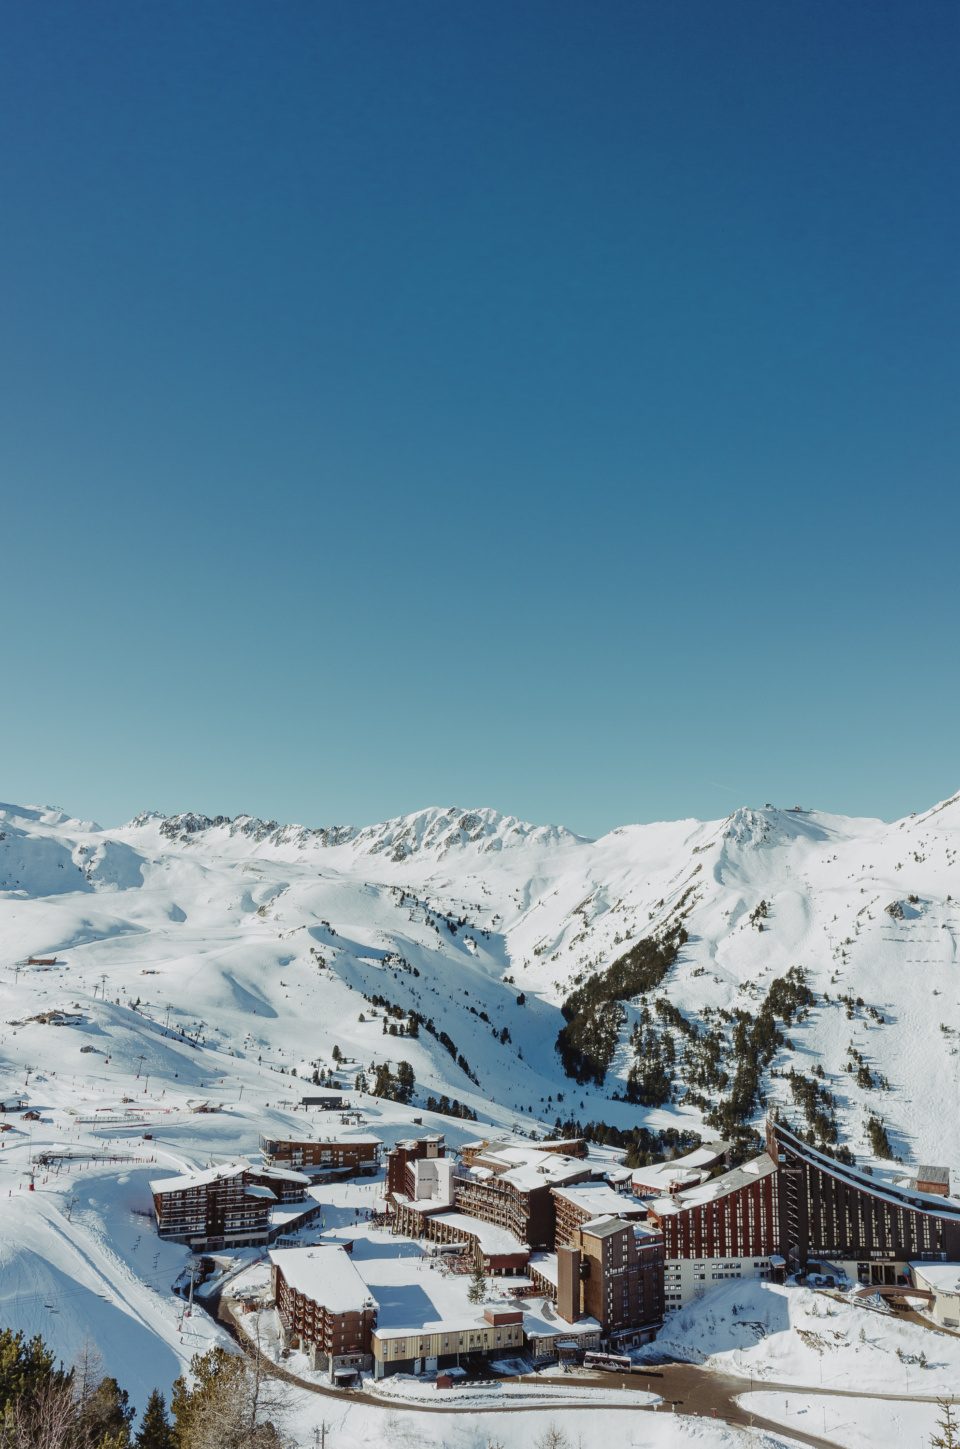 Ski resort Les Arcs in France